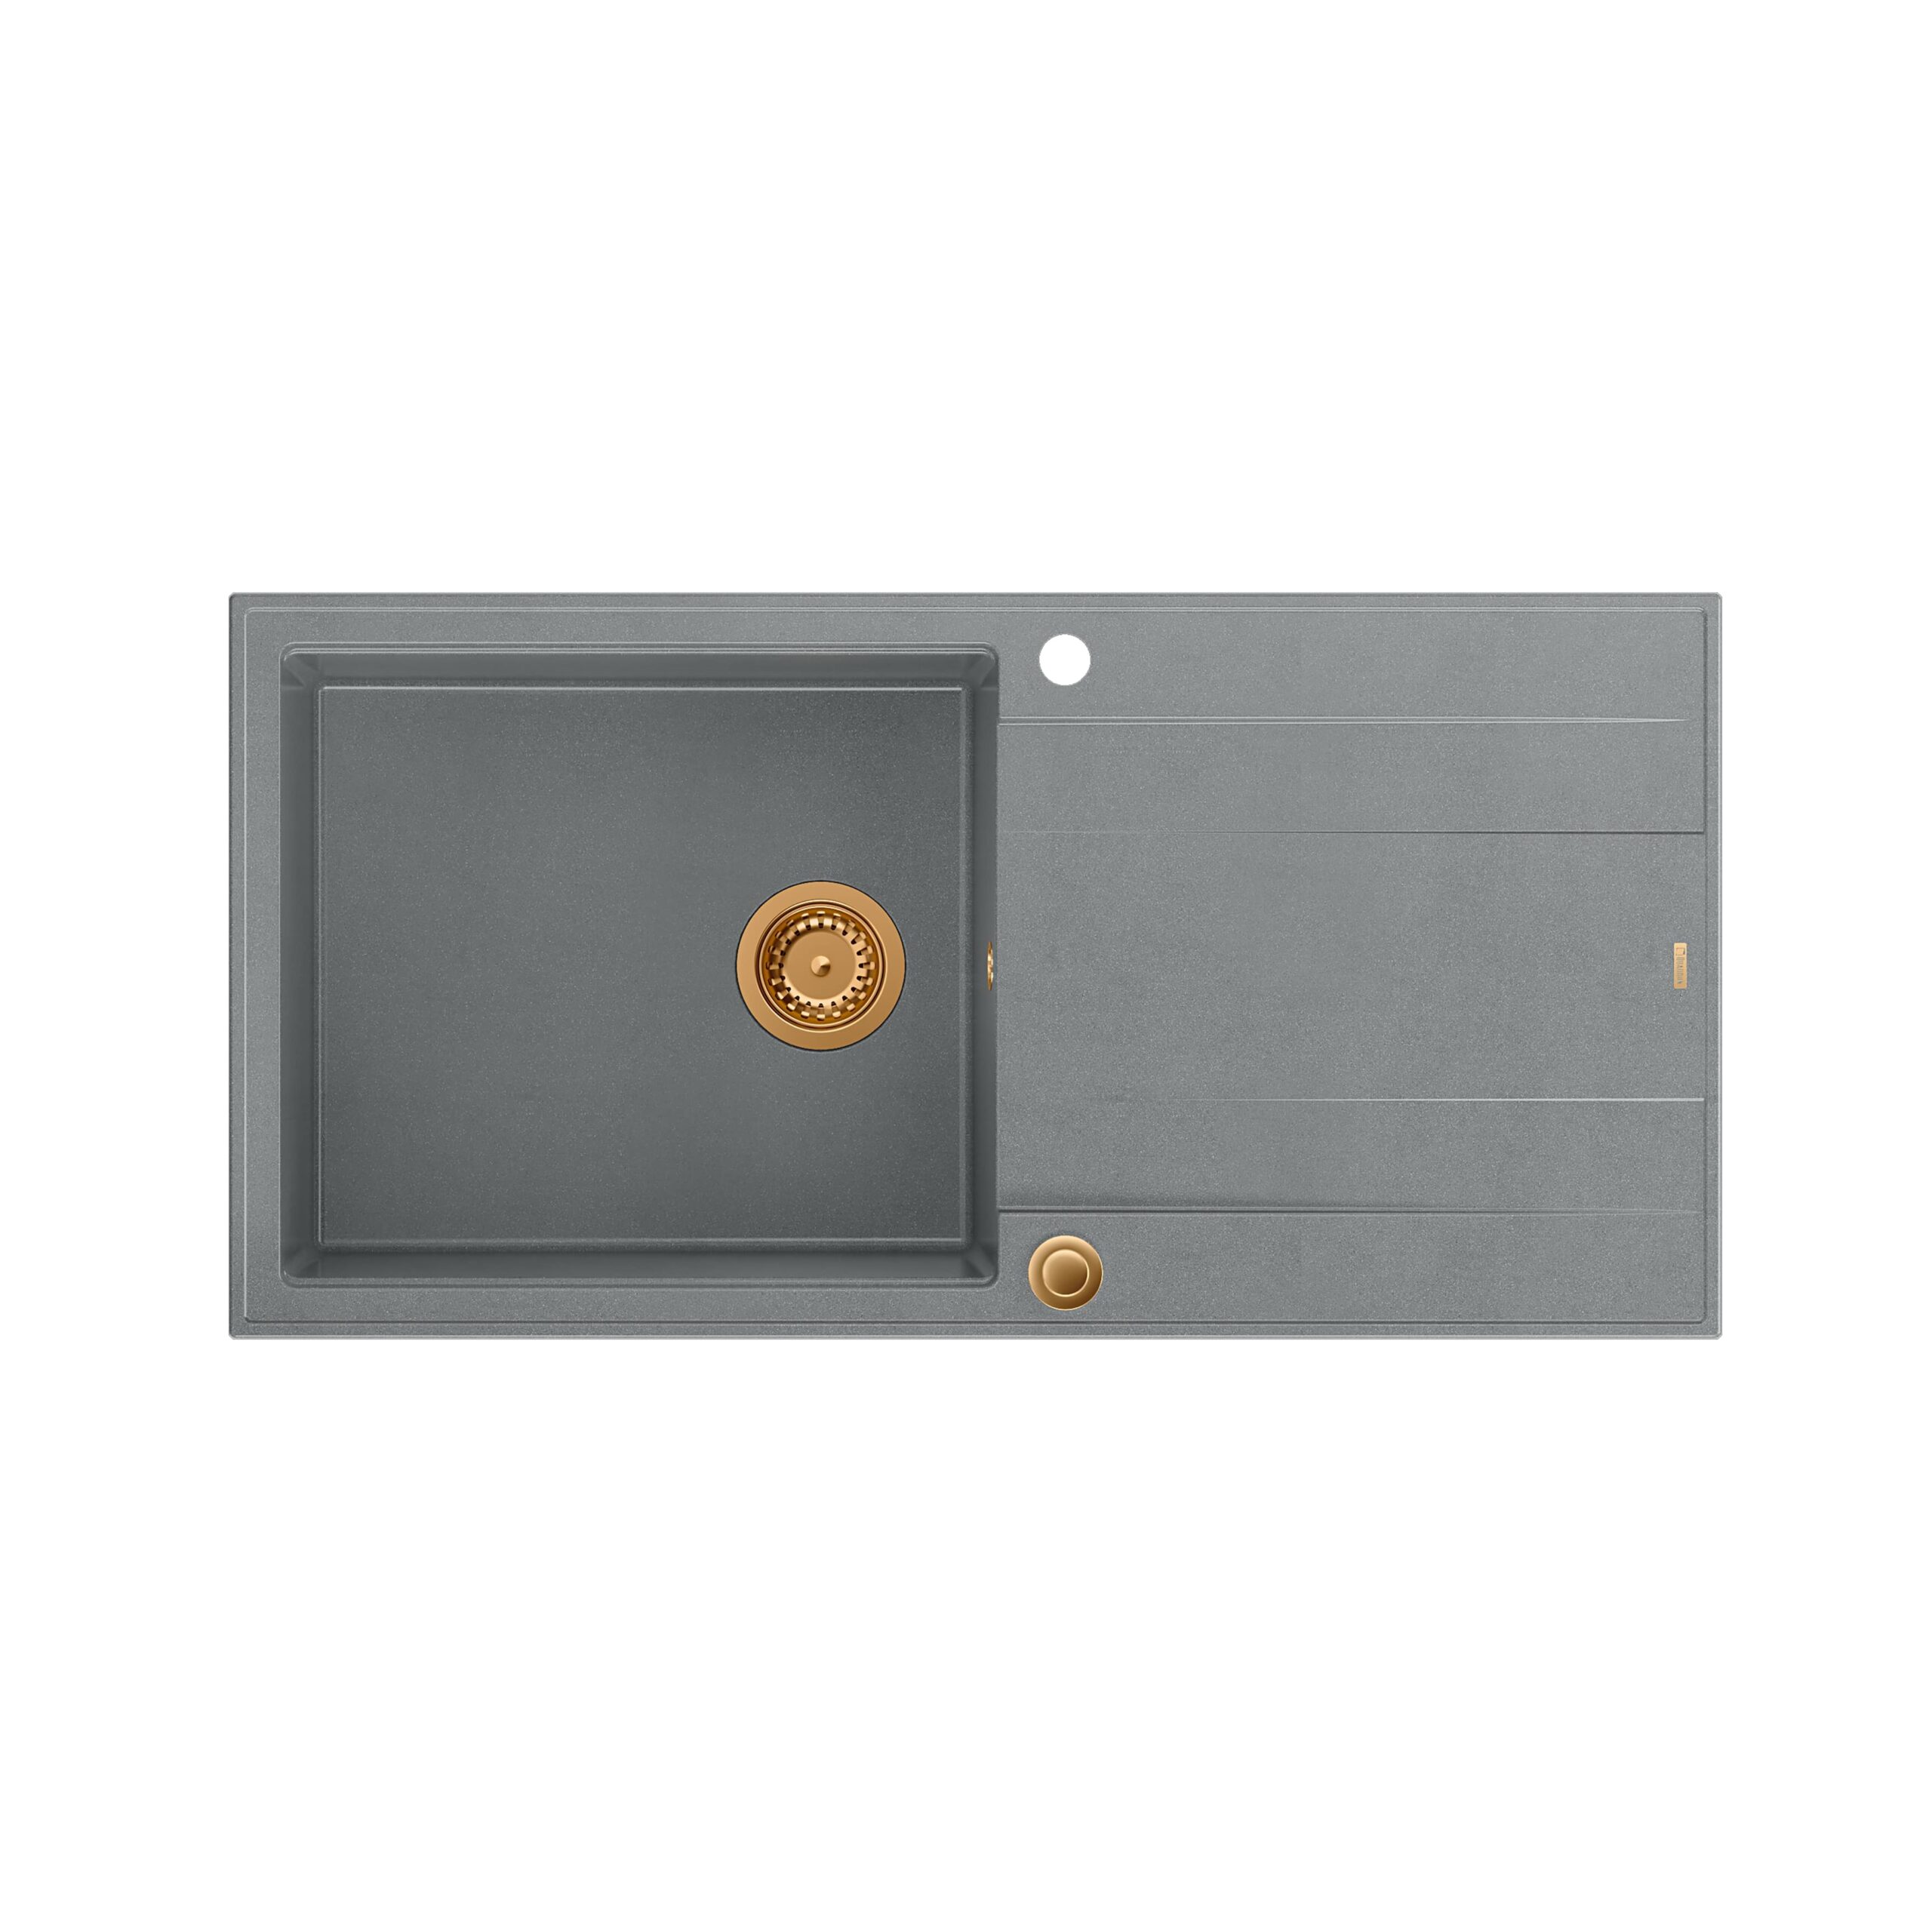 ЭВАН 146 XL Раковина GraniteQ с сифоном Push 2 Open 1-чаша б/н (1000x500x210; яч. 420×480) элементы серебро/медь